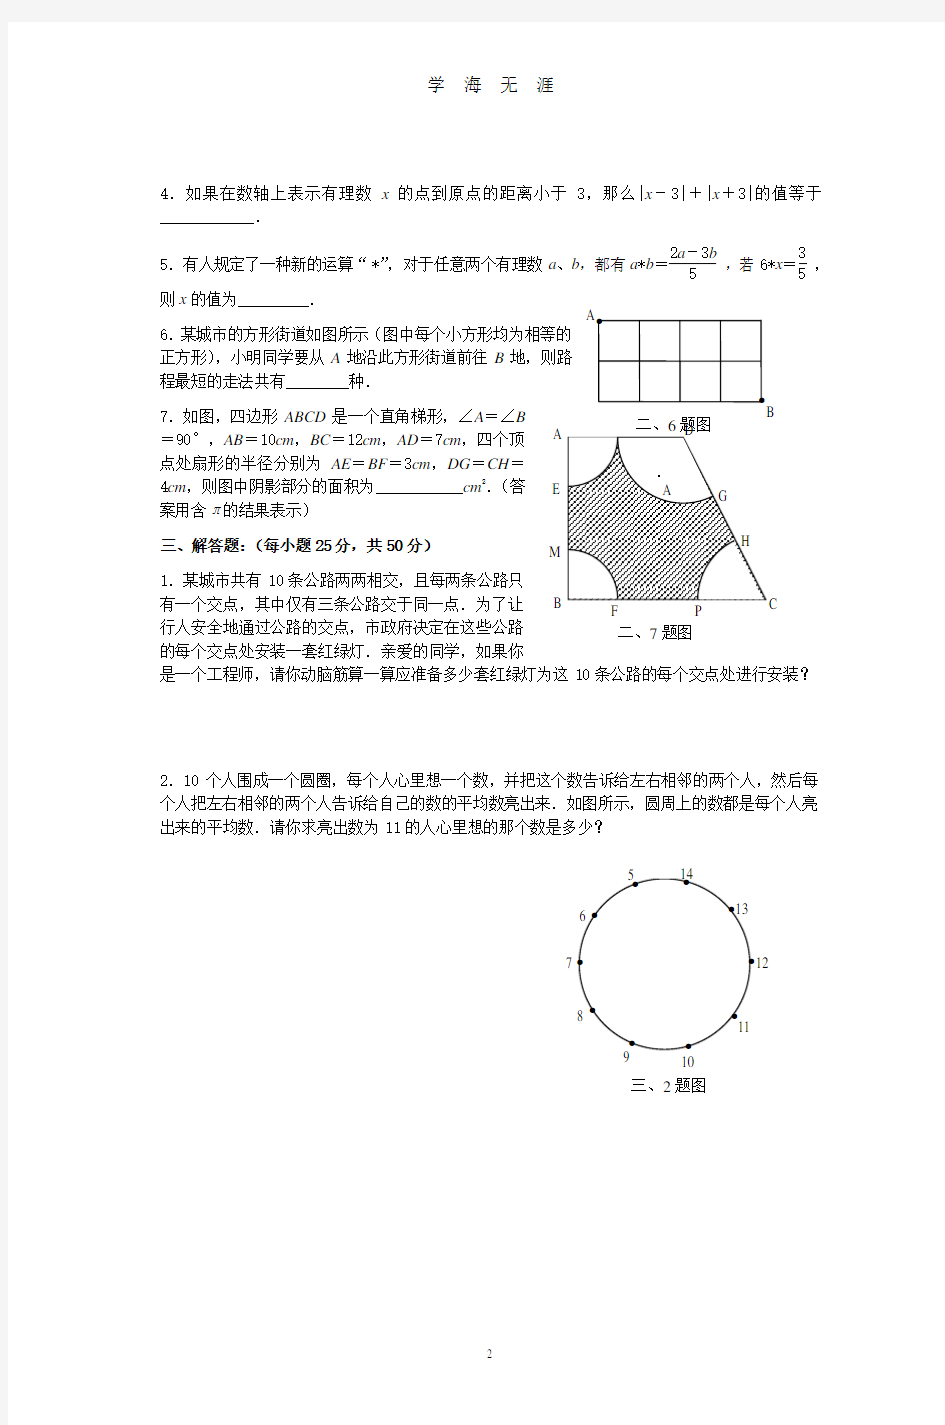 重庆市初中数学竞赛初赛试题(A卷)(2020年8月整理).pdf